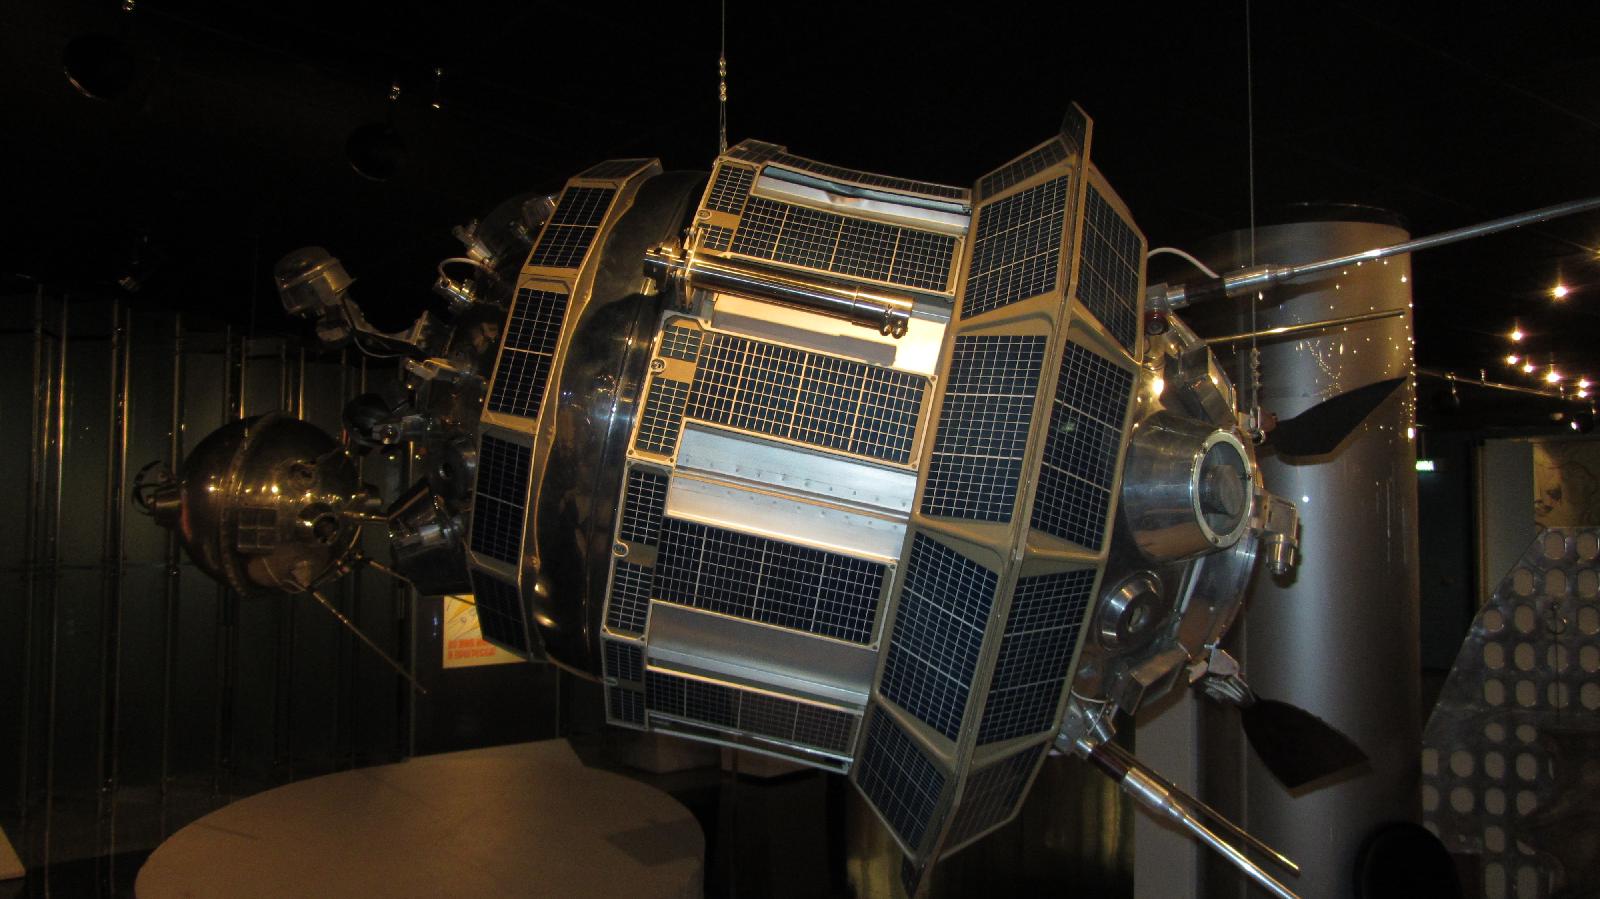 Запуск первой в мире автоматической межпланетной станции. Луна-4 автоматическая межпланетная станция. Луна-3 автоматическая межпланетная станция. Луна-2 автоматическая межпланетная станция. Советская автоматическая межпланетная станция «Луна-1».